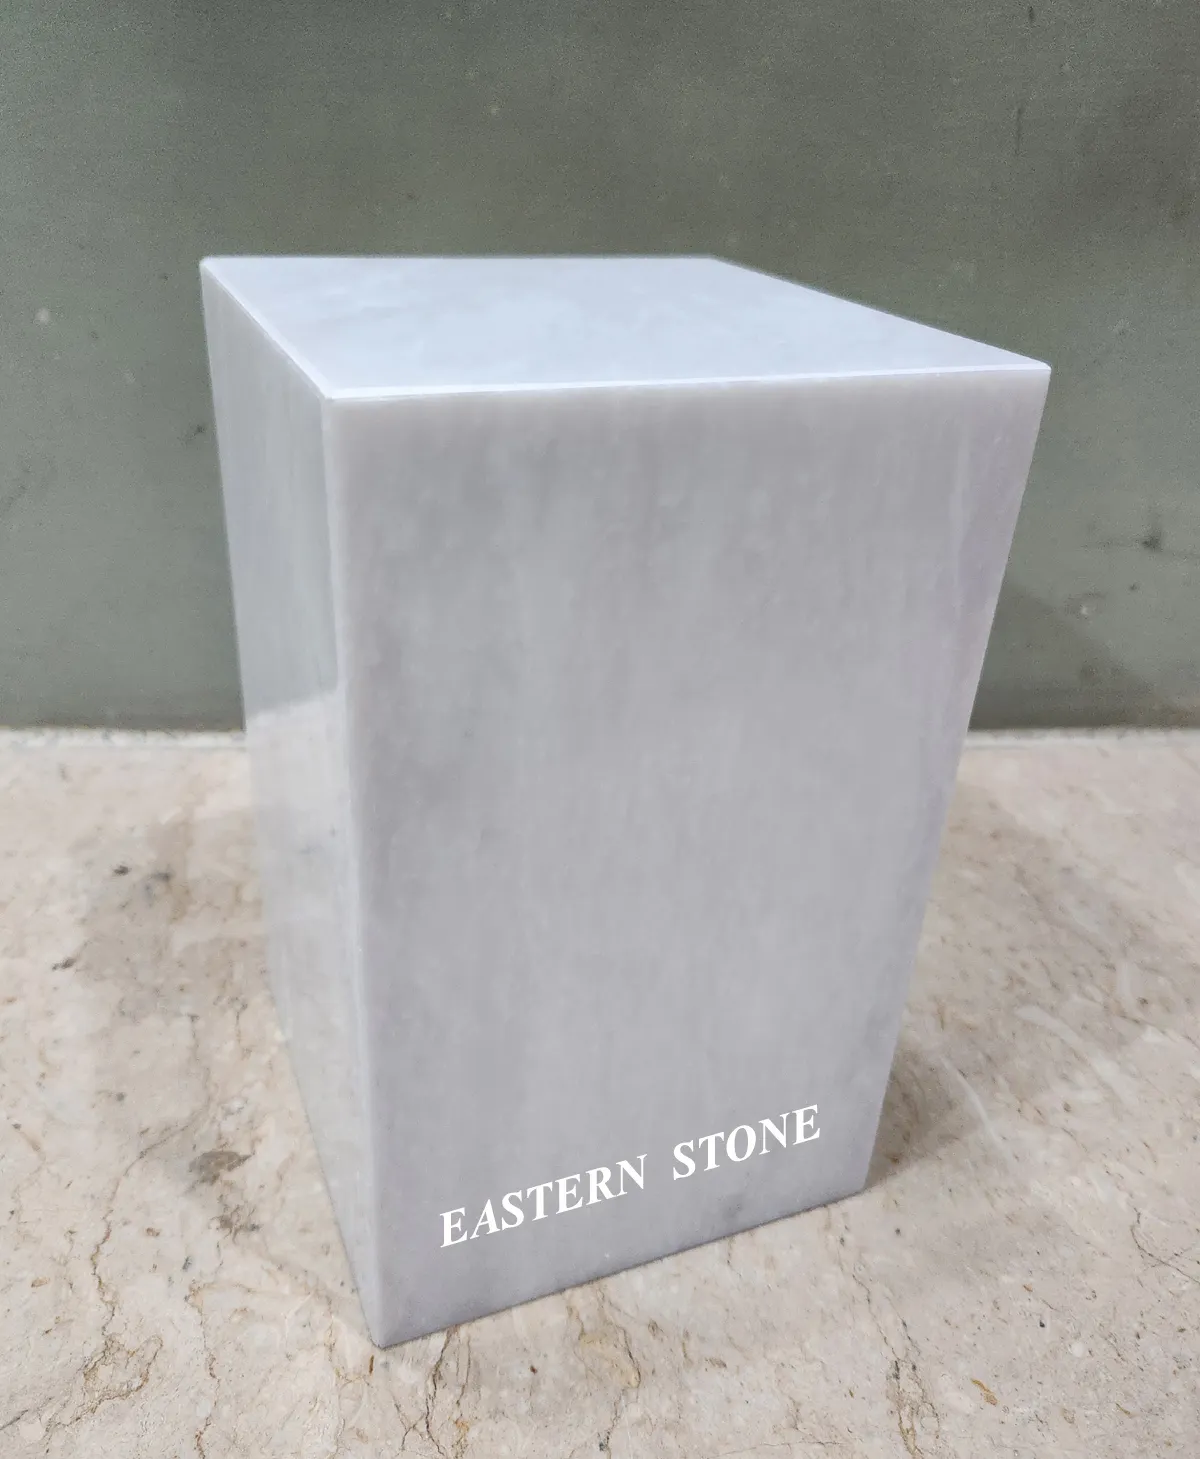 Amerikaanse Stijl Onyx En Marmeren Stenen As Crematie Containers Vierkante En Rechthoekige Ontwerpen Voor Volwassen Begrafenis Urnen